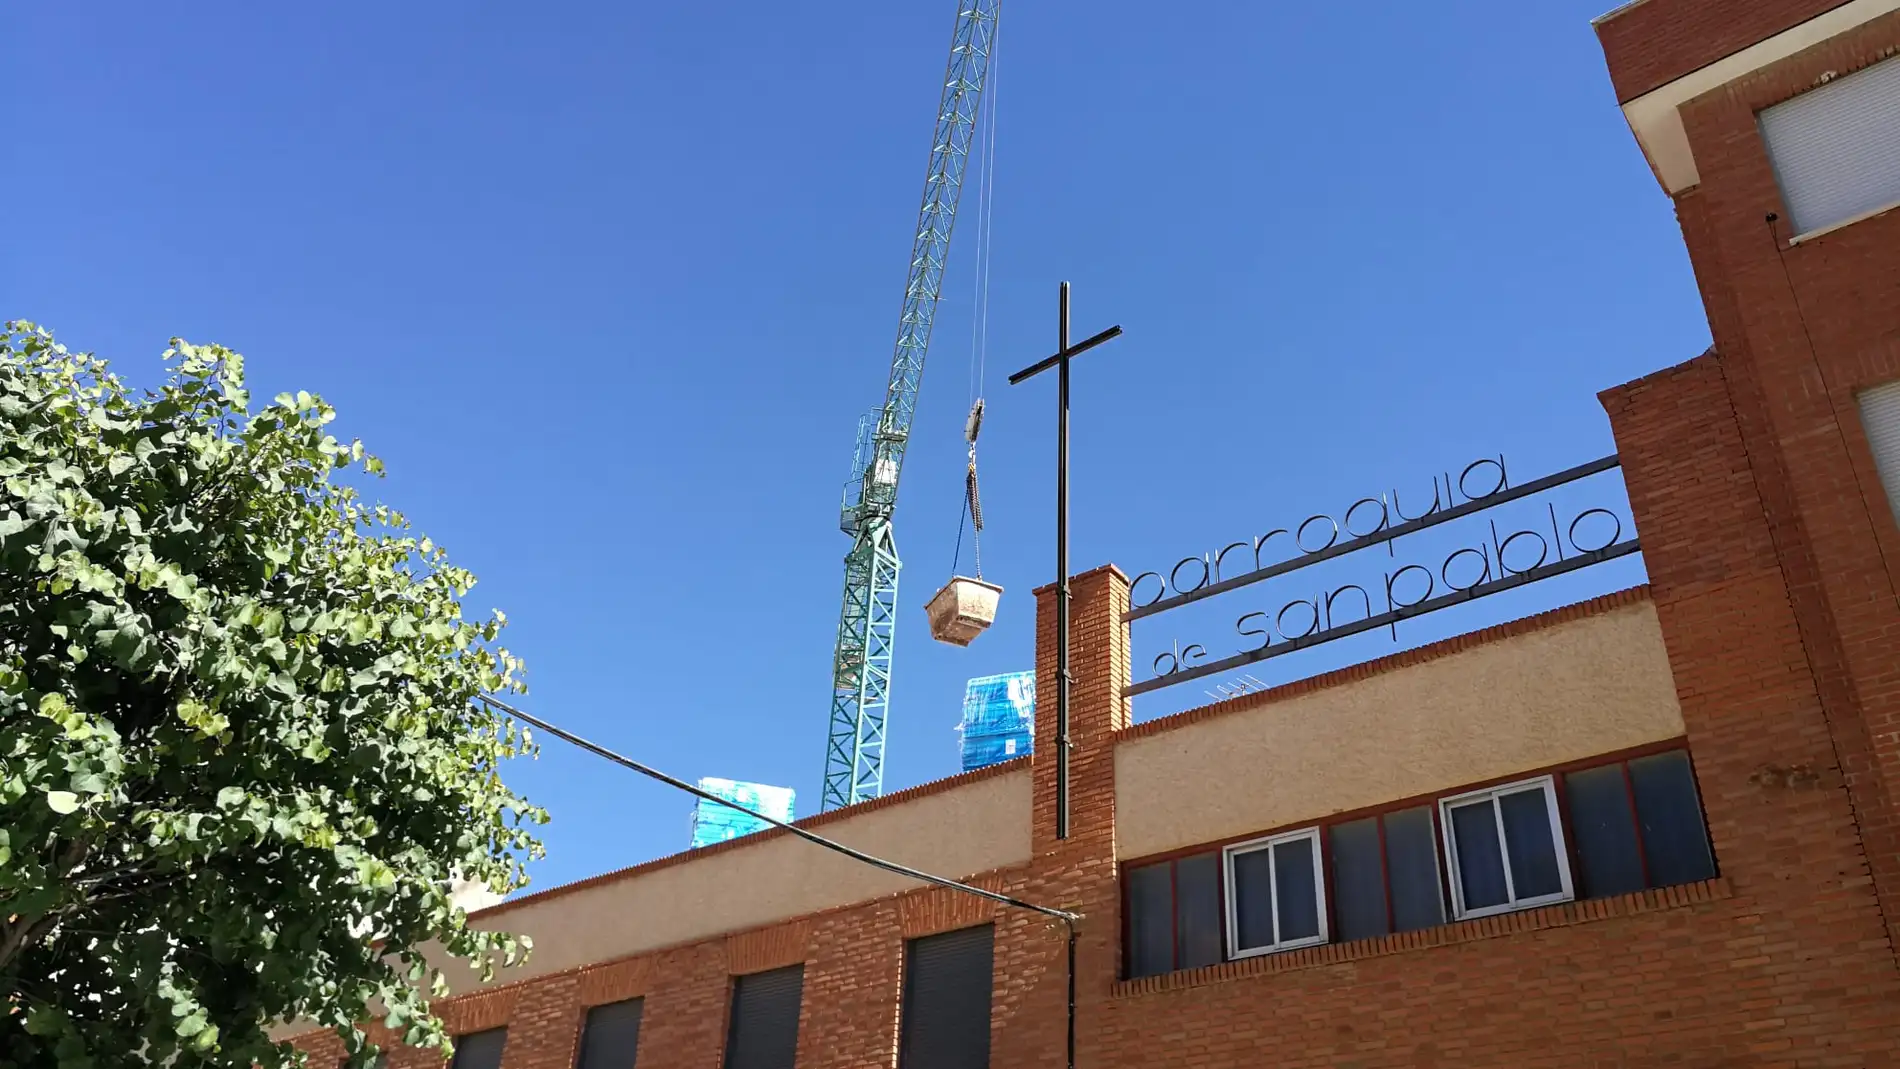 La parroquia San Pablo pone en marcha un proyecto para recoger fondos para la remodelación de las cubiertas